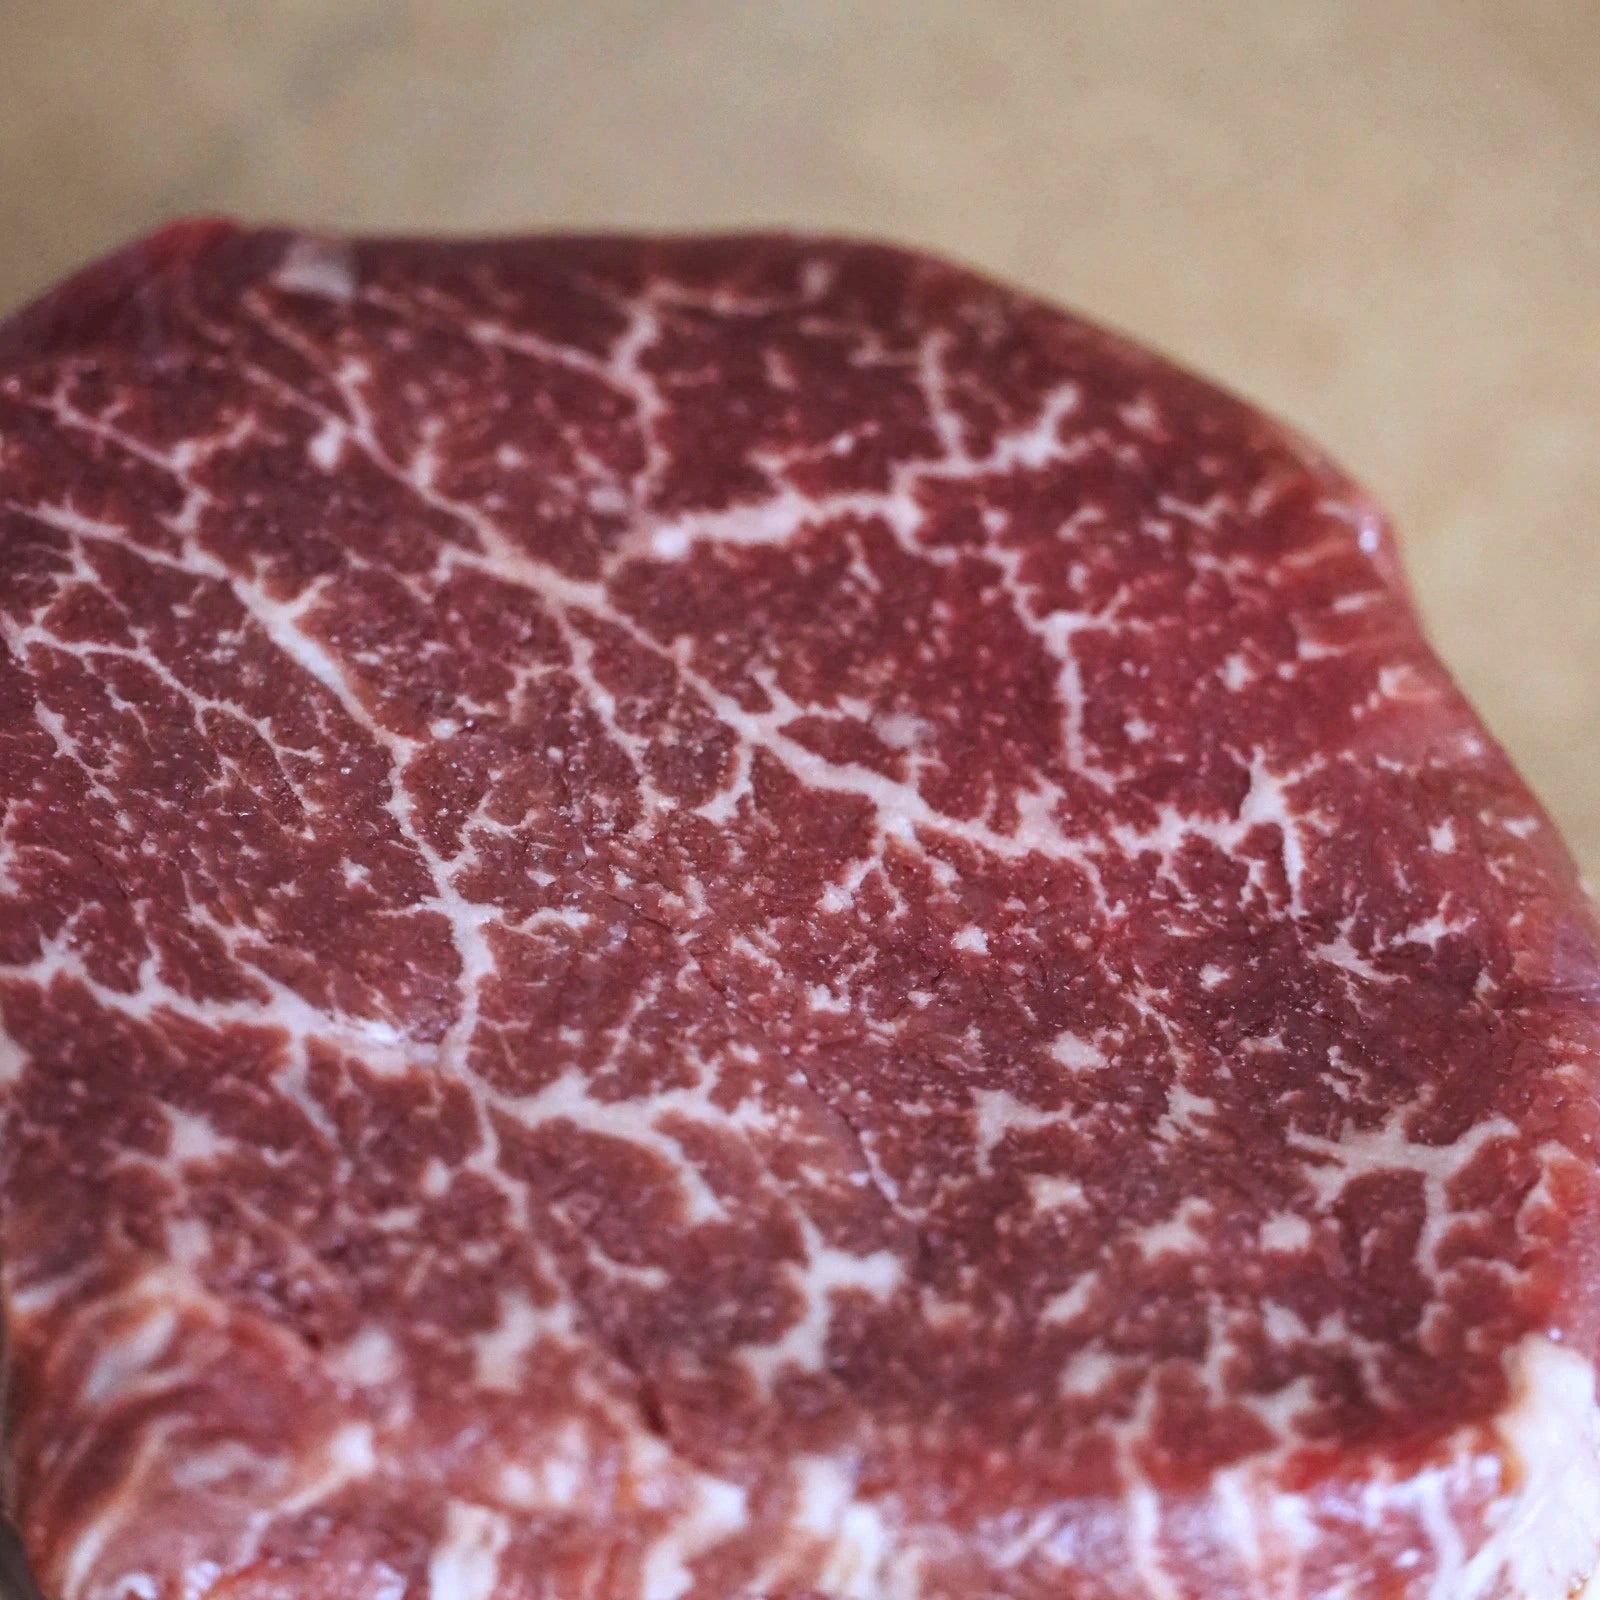 Morgan Ranch USDA Prime Filet Mignon Steak (200g) - Horizon Farms